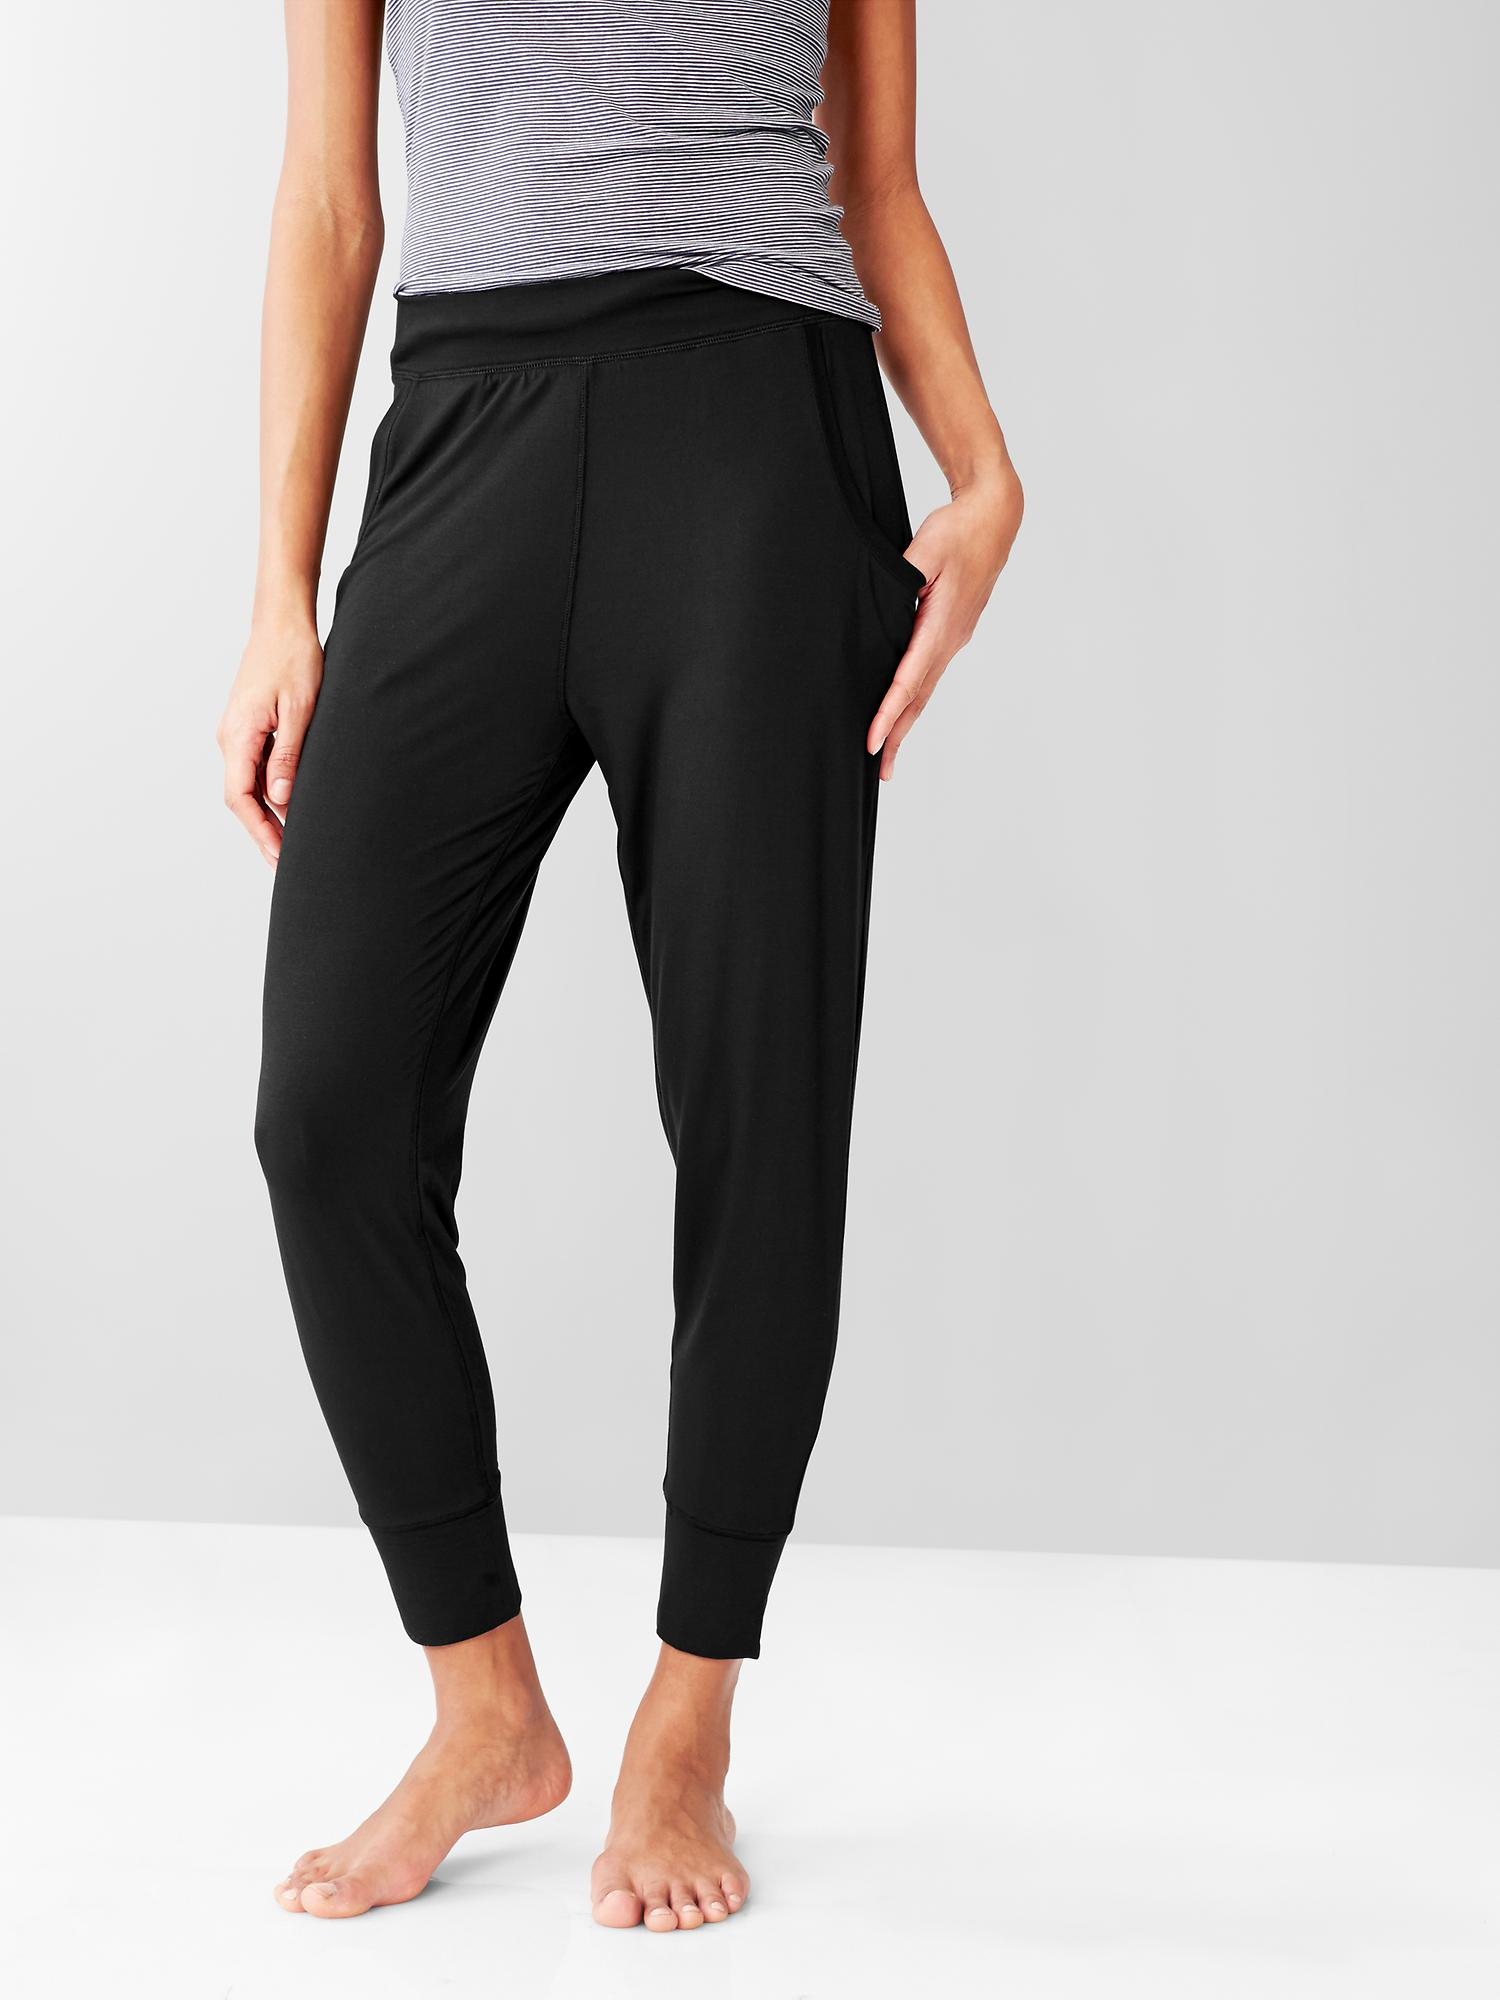 Gap Pure Body Modal Pants in Black (true black ) | Lyst